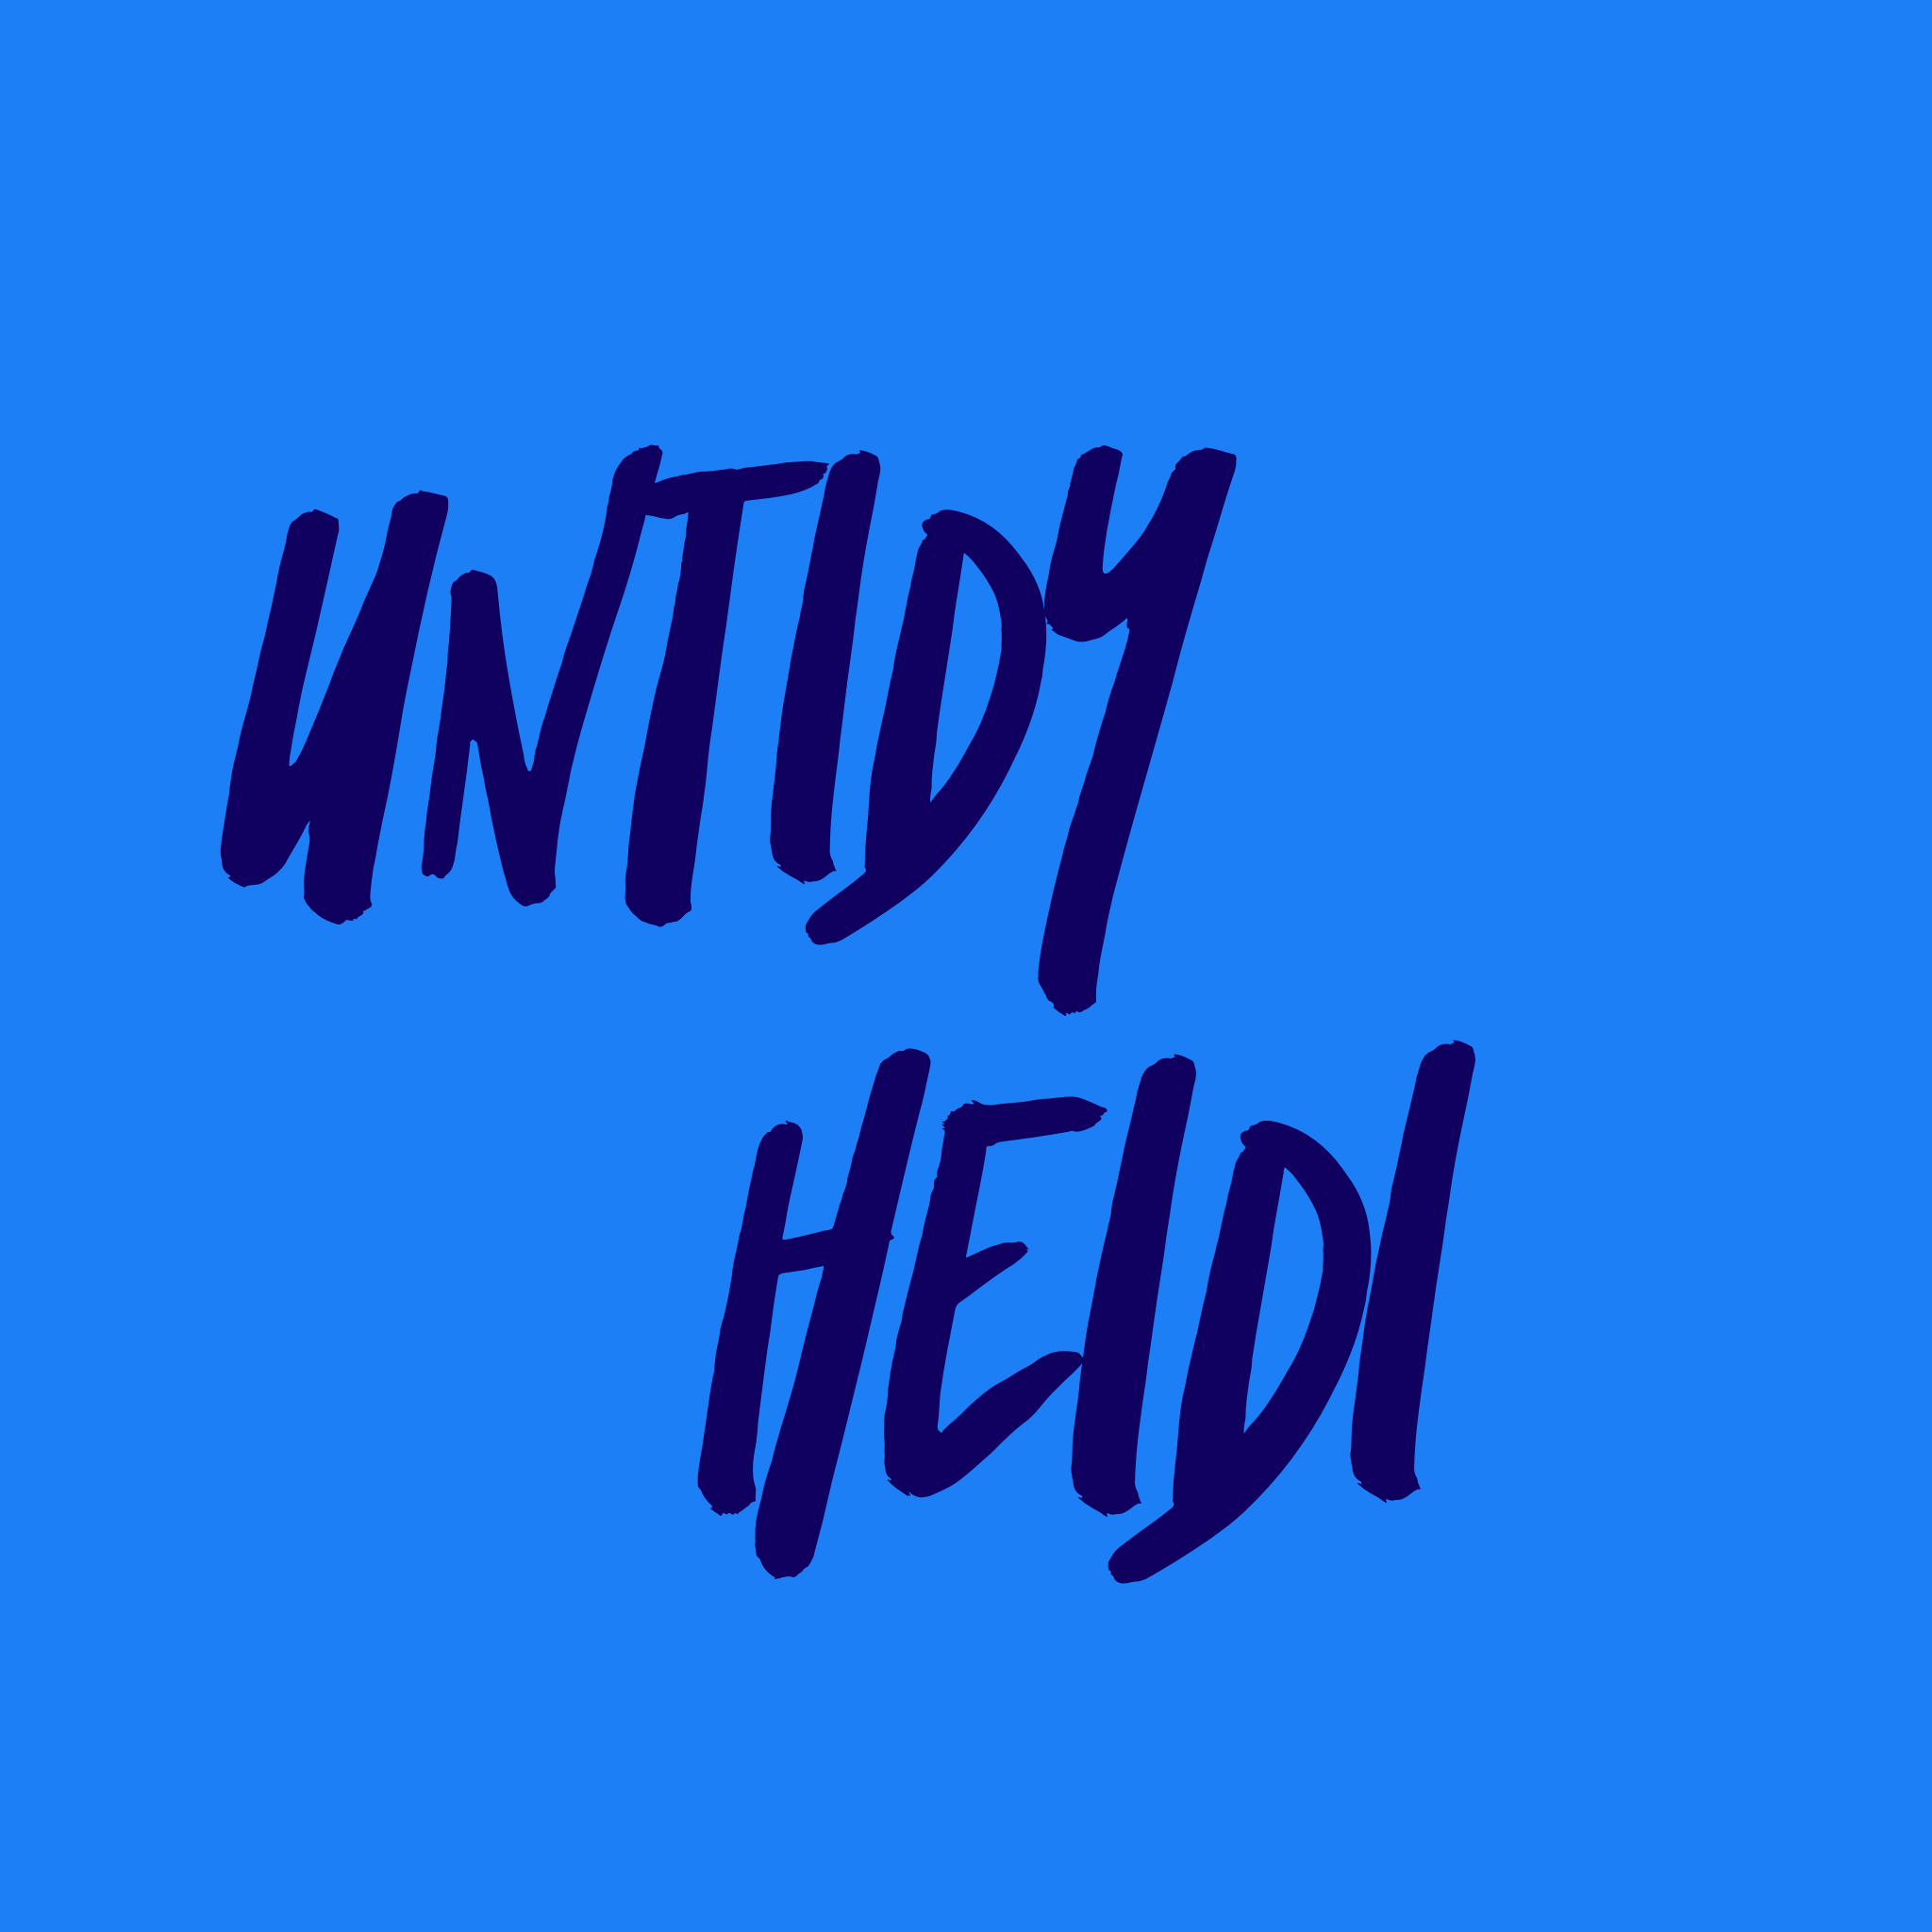 Untidy Heidi